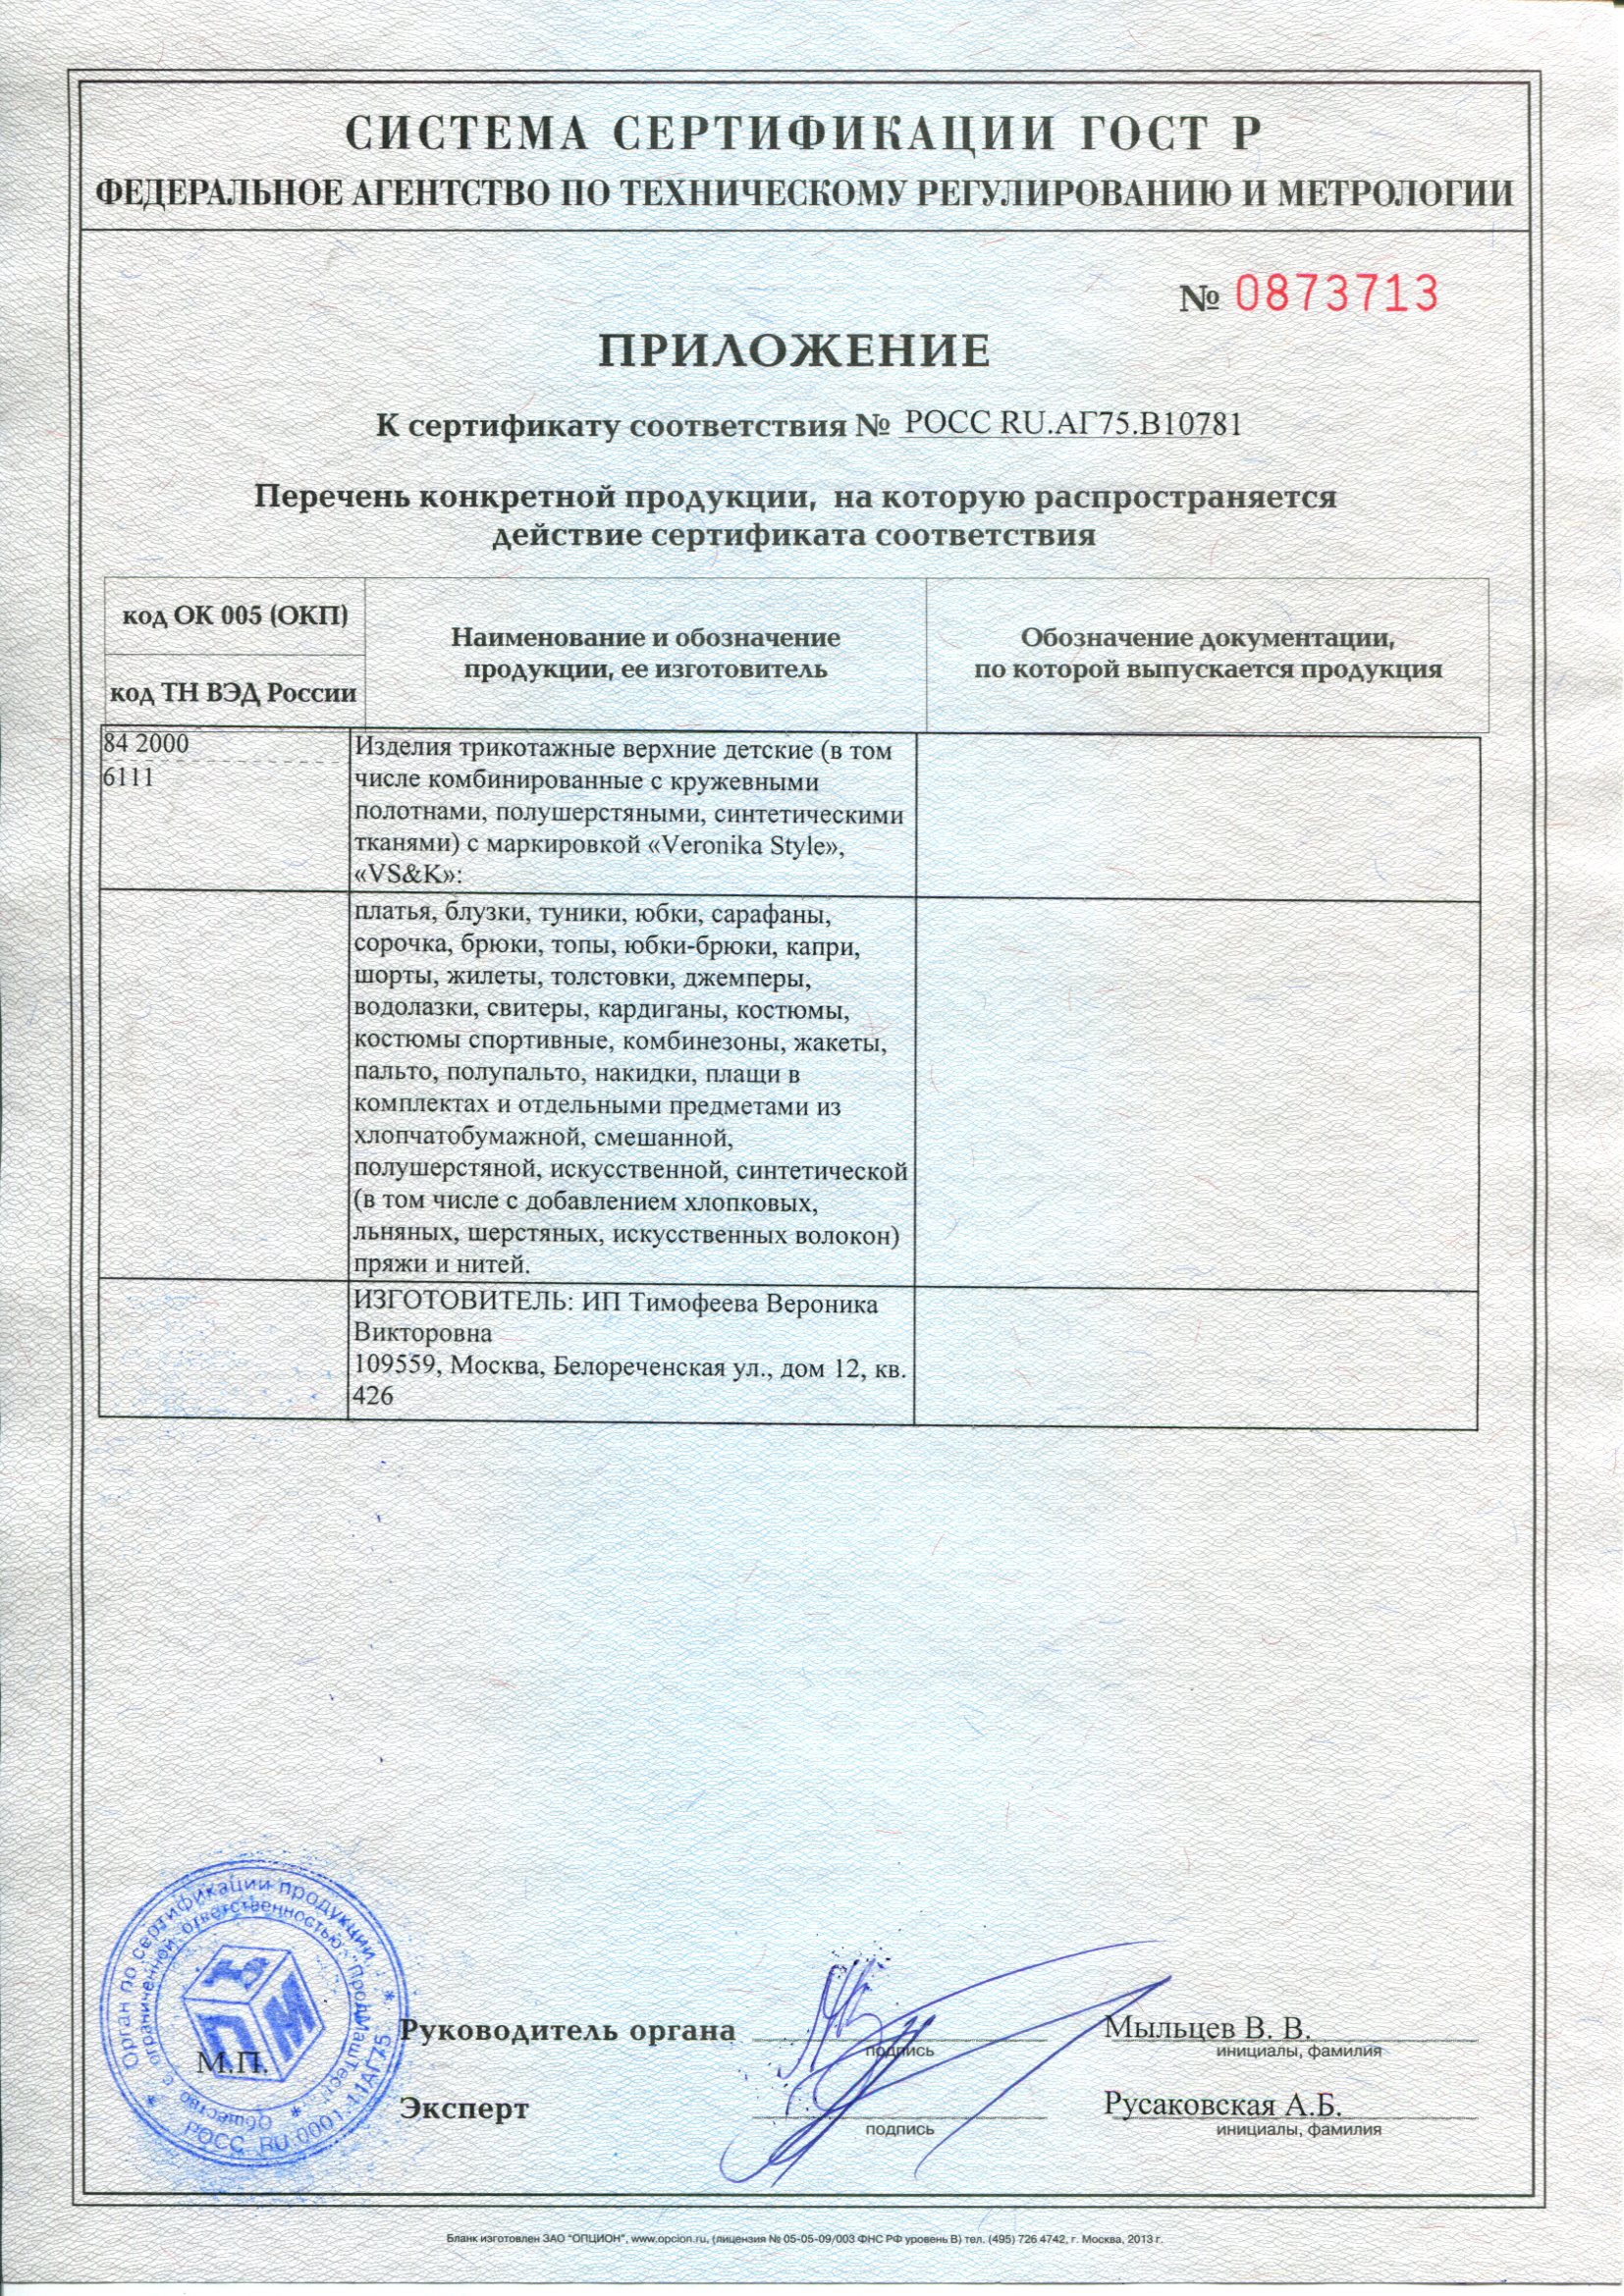 Пример приложения Сертификата соответствия ГОСТ Р 